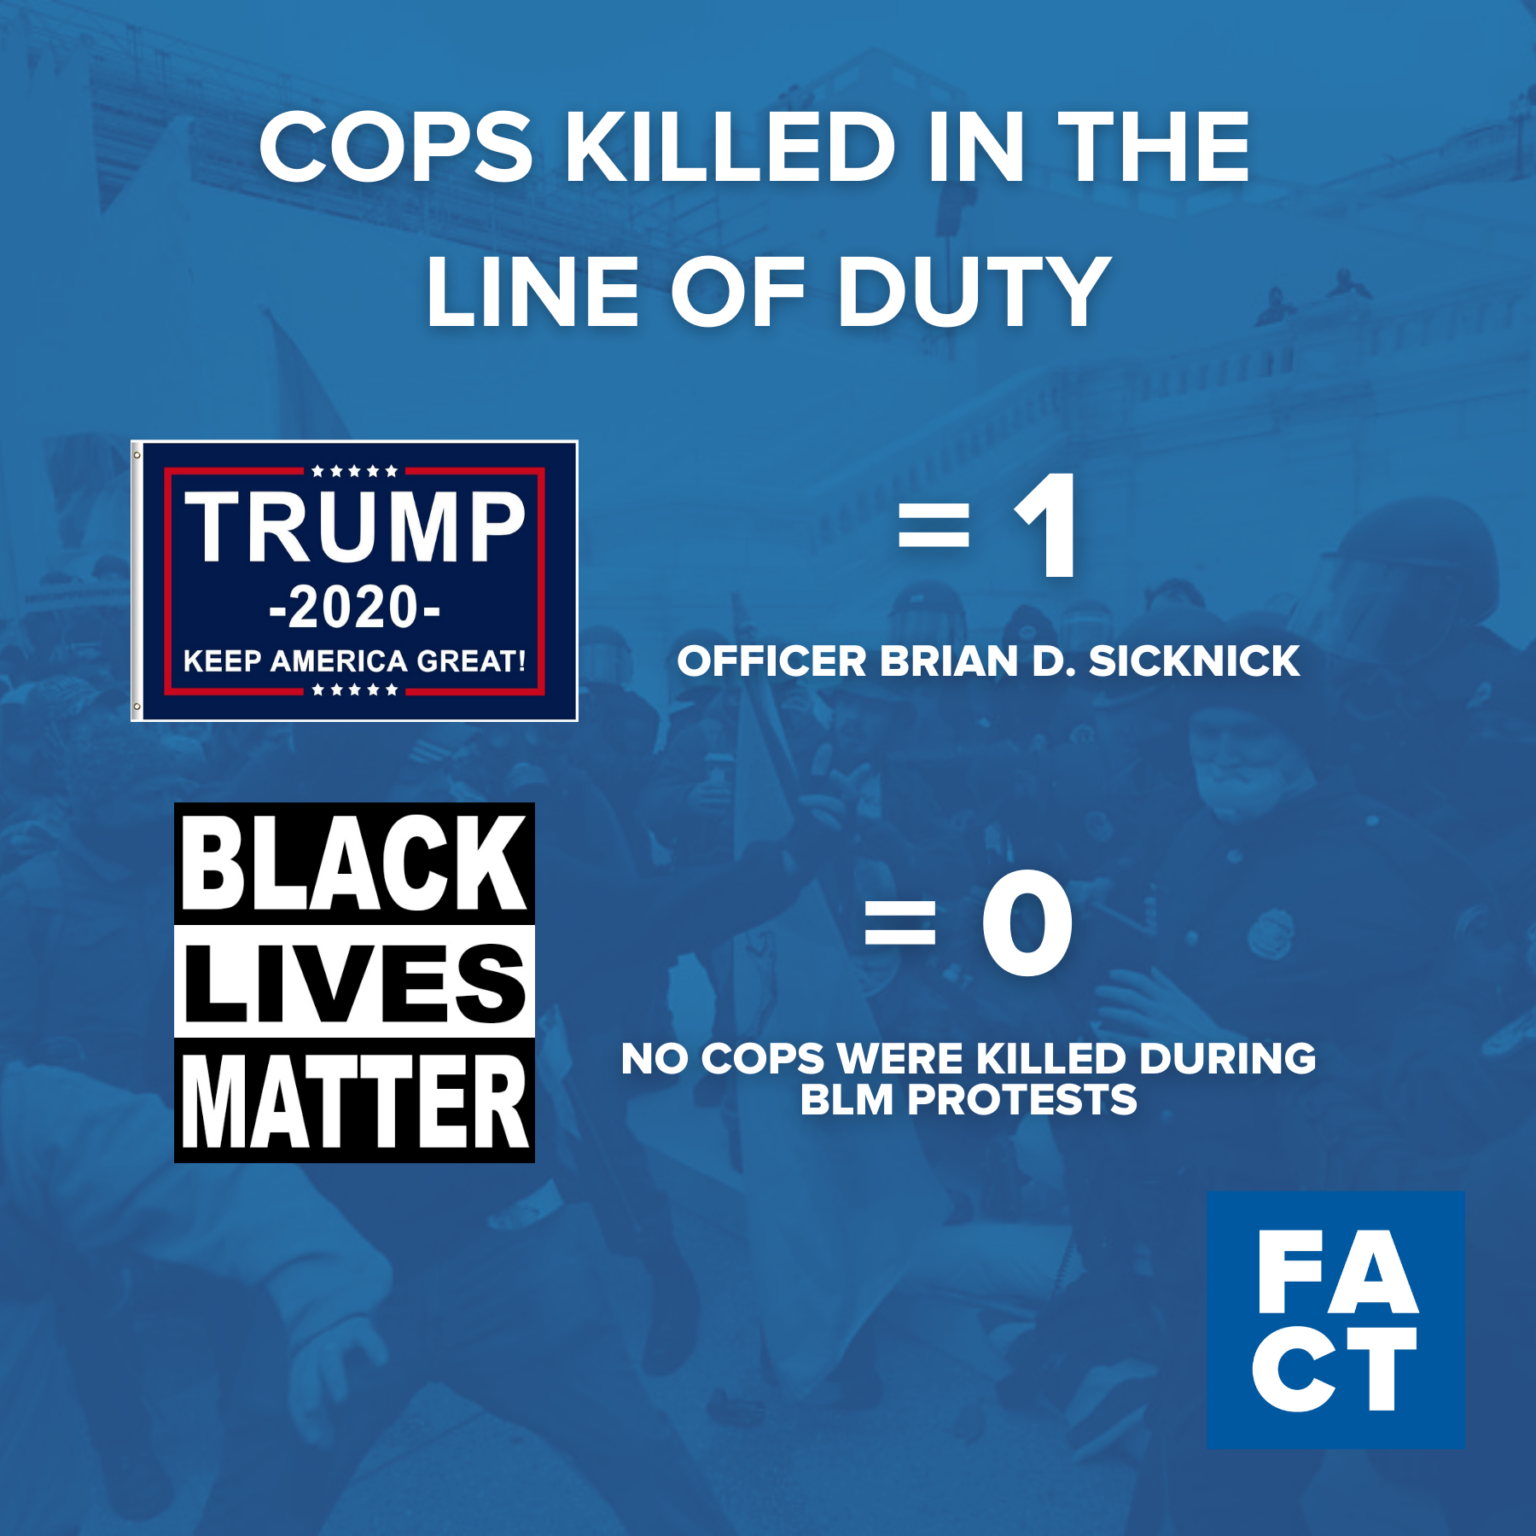 Η εξέγερση του Τραμπ σκότωσε περισσότερους αστυνομικούς παρά οι διαδηλώσεις των μαύρων ζωών